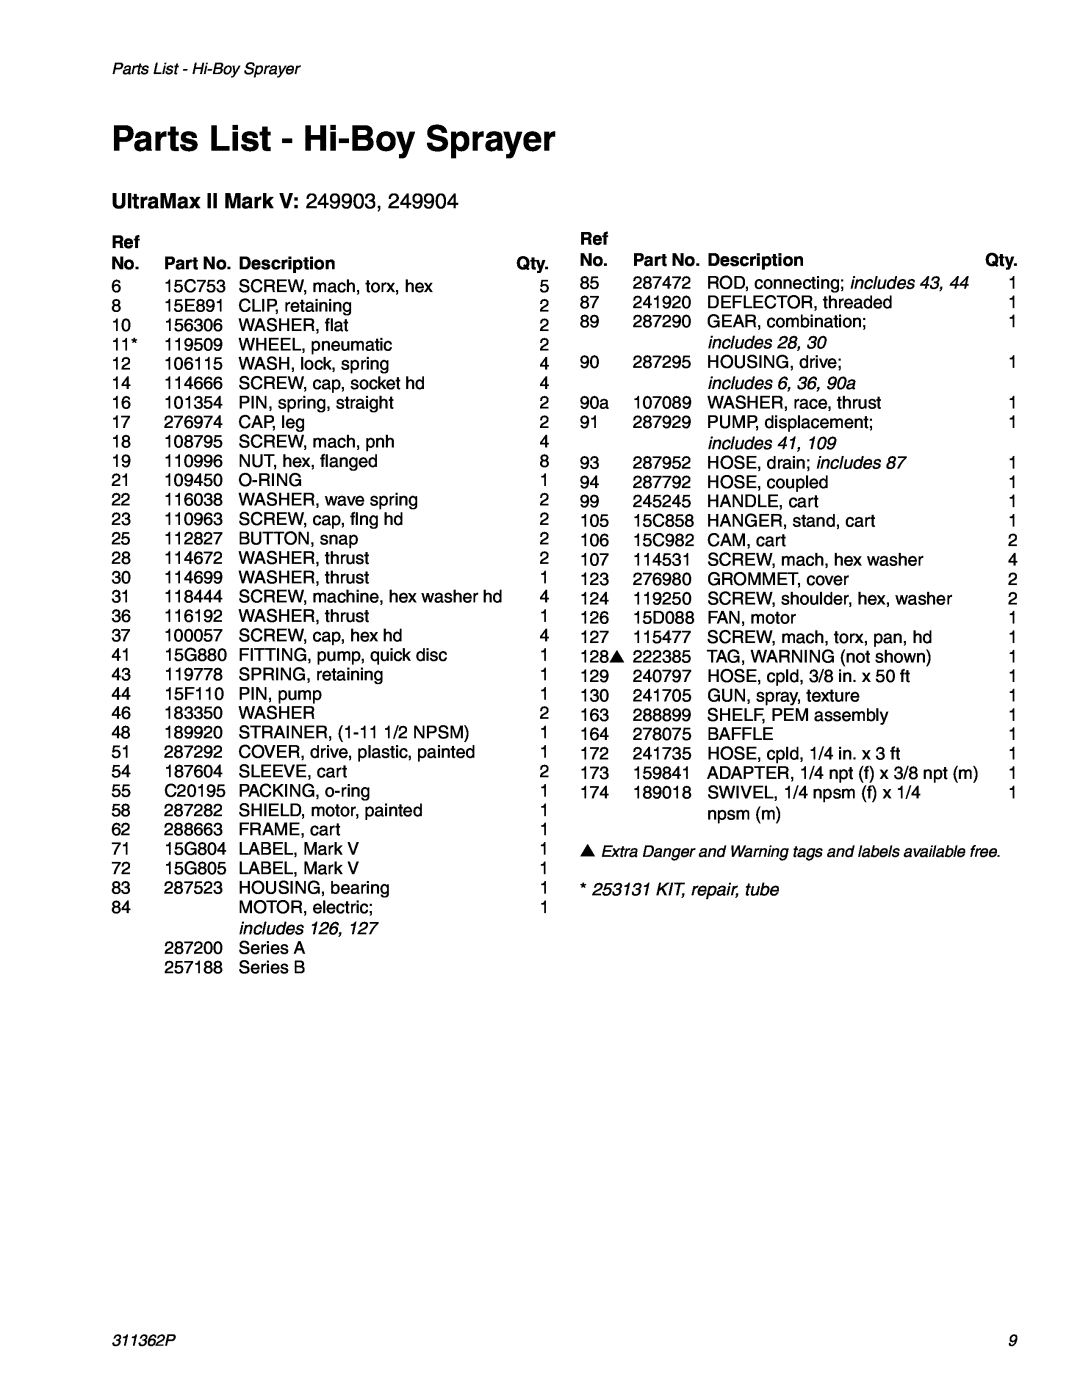 Graco Inc 1595, 1095 manual Parts List - Hi-Boy Sprayer, UltraMax II Mark V, Part No. Description 